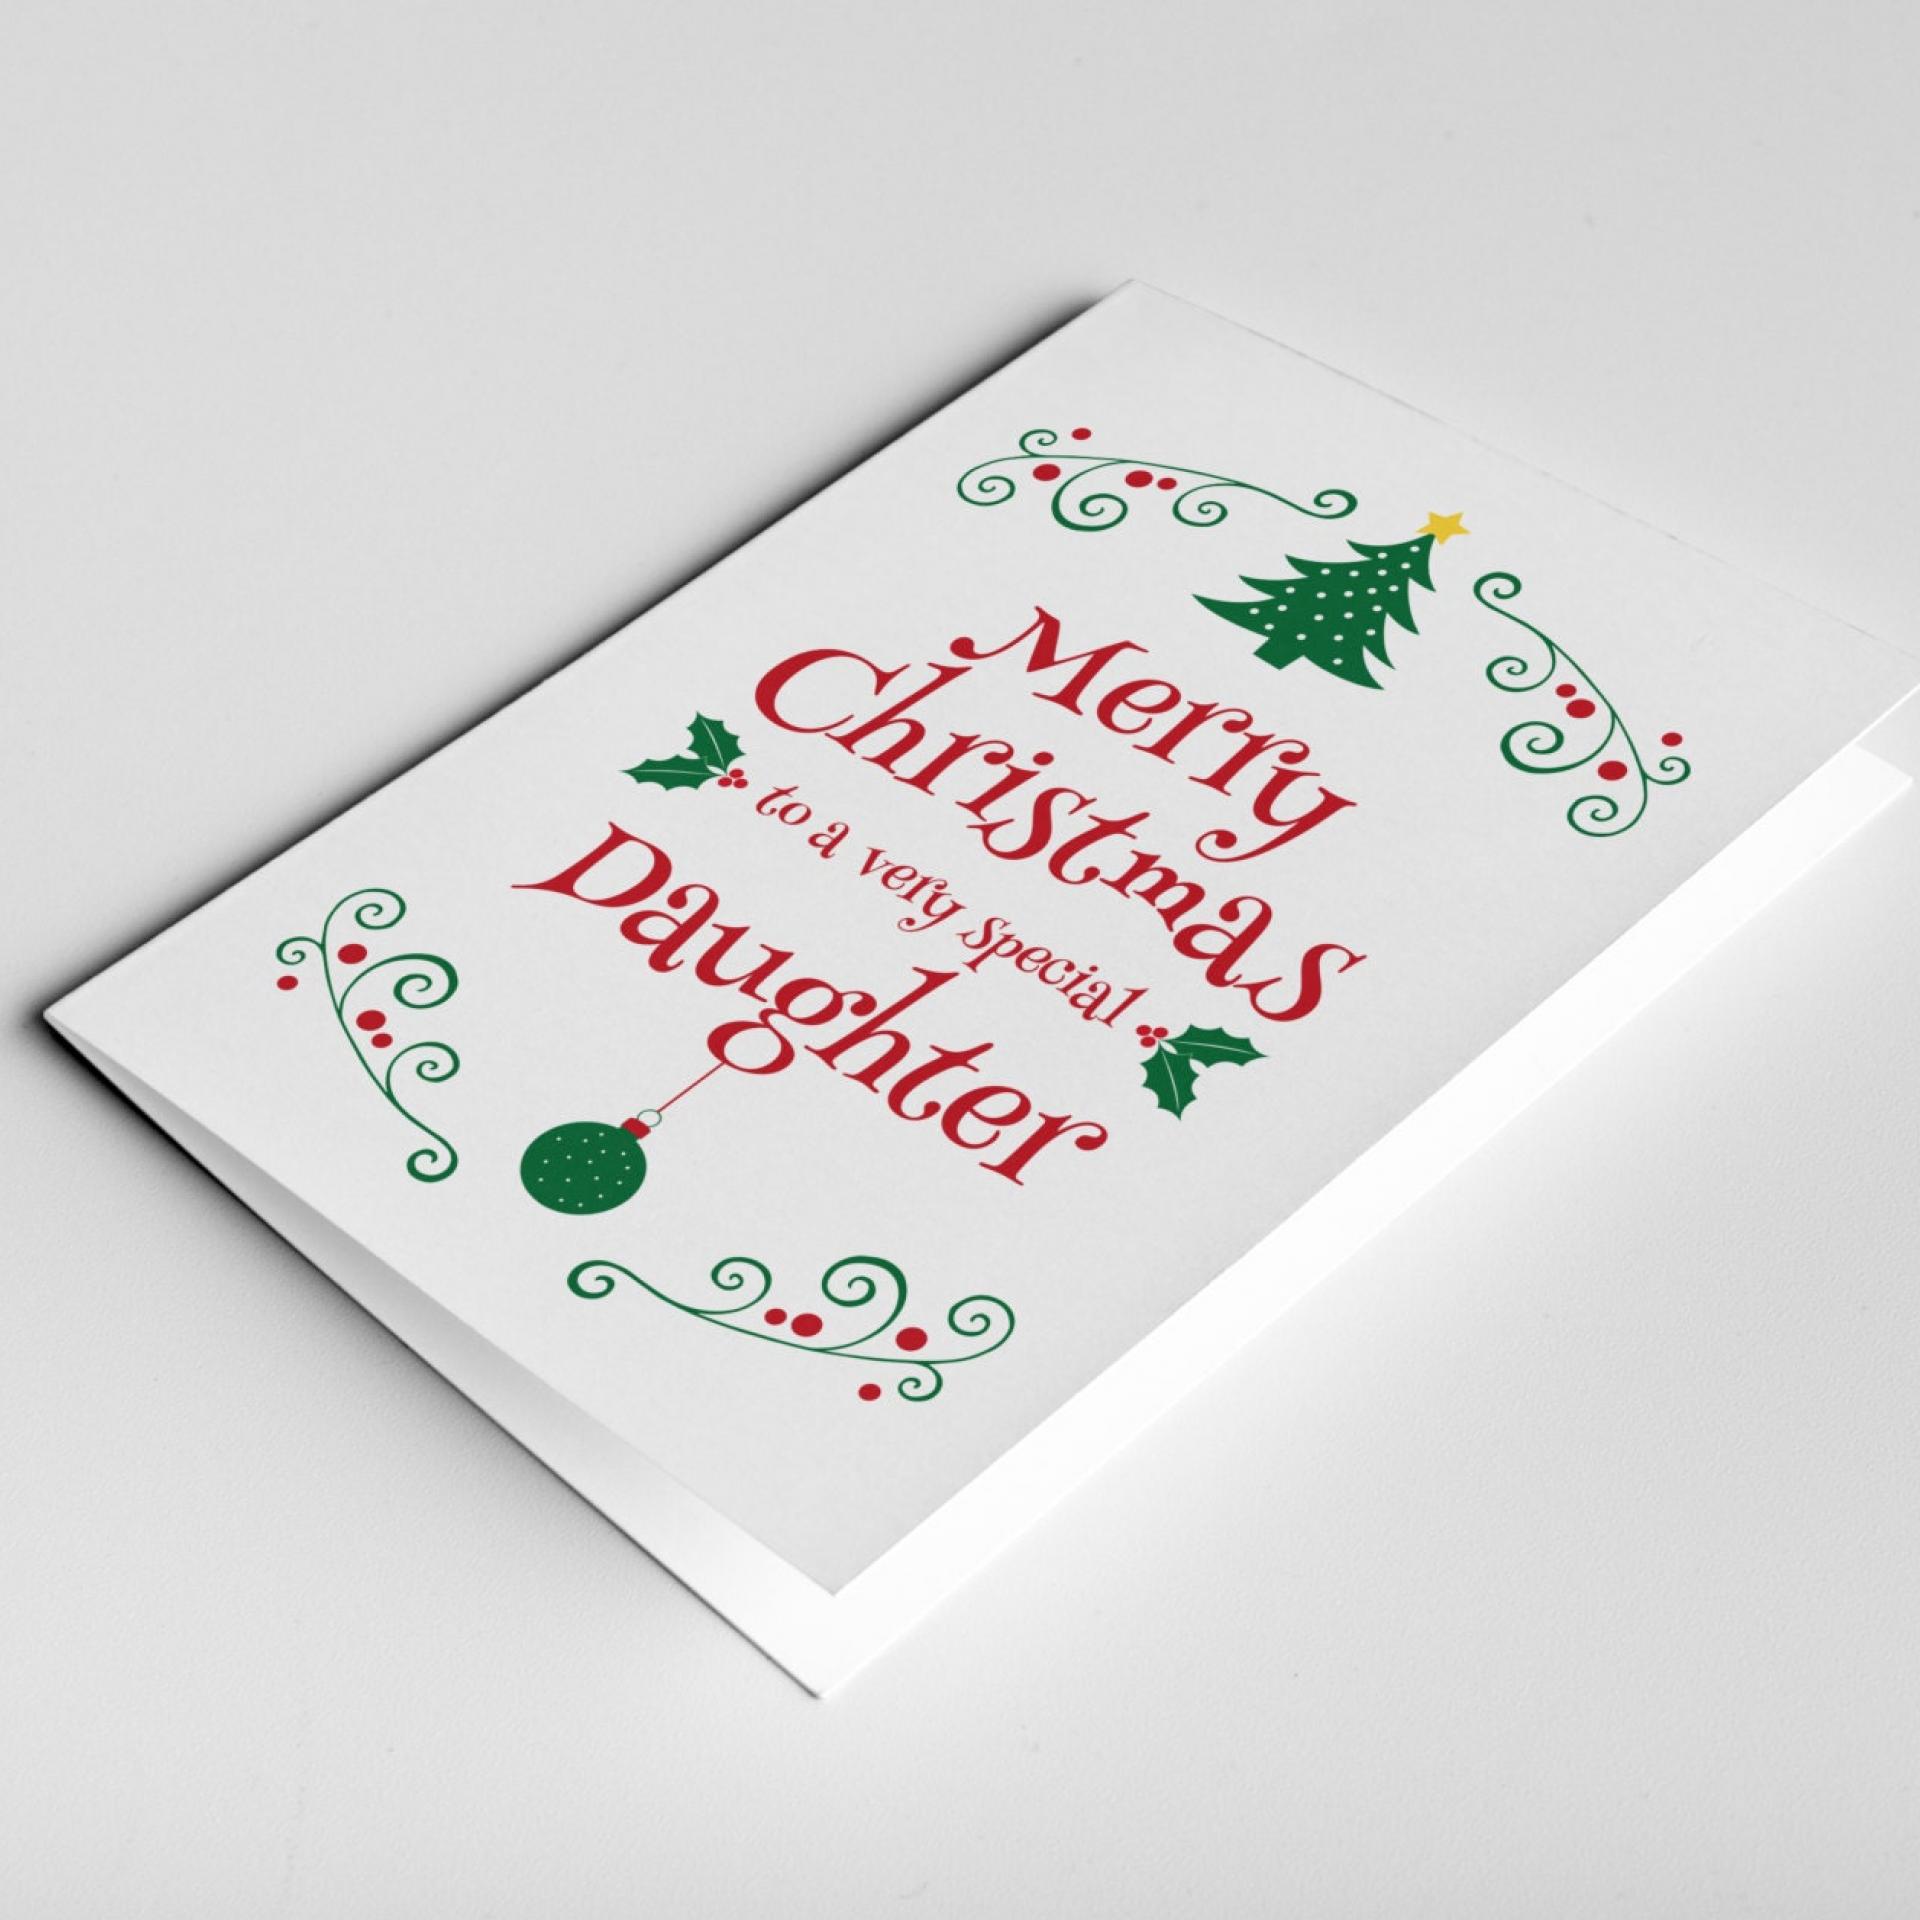 Daughter Christmas Card, Christmas Gift For Daughter, Daughter Card, Daughter in Law Gift, Christmas Daughter Card, Stepdaughter Card Xmas